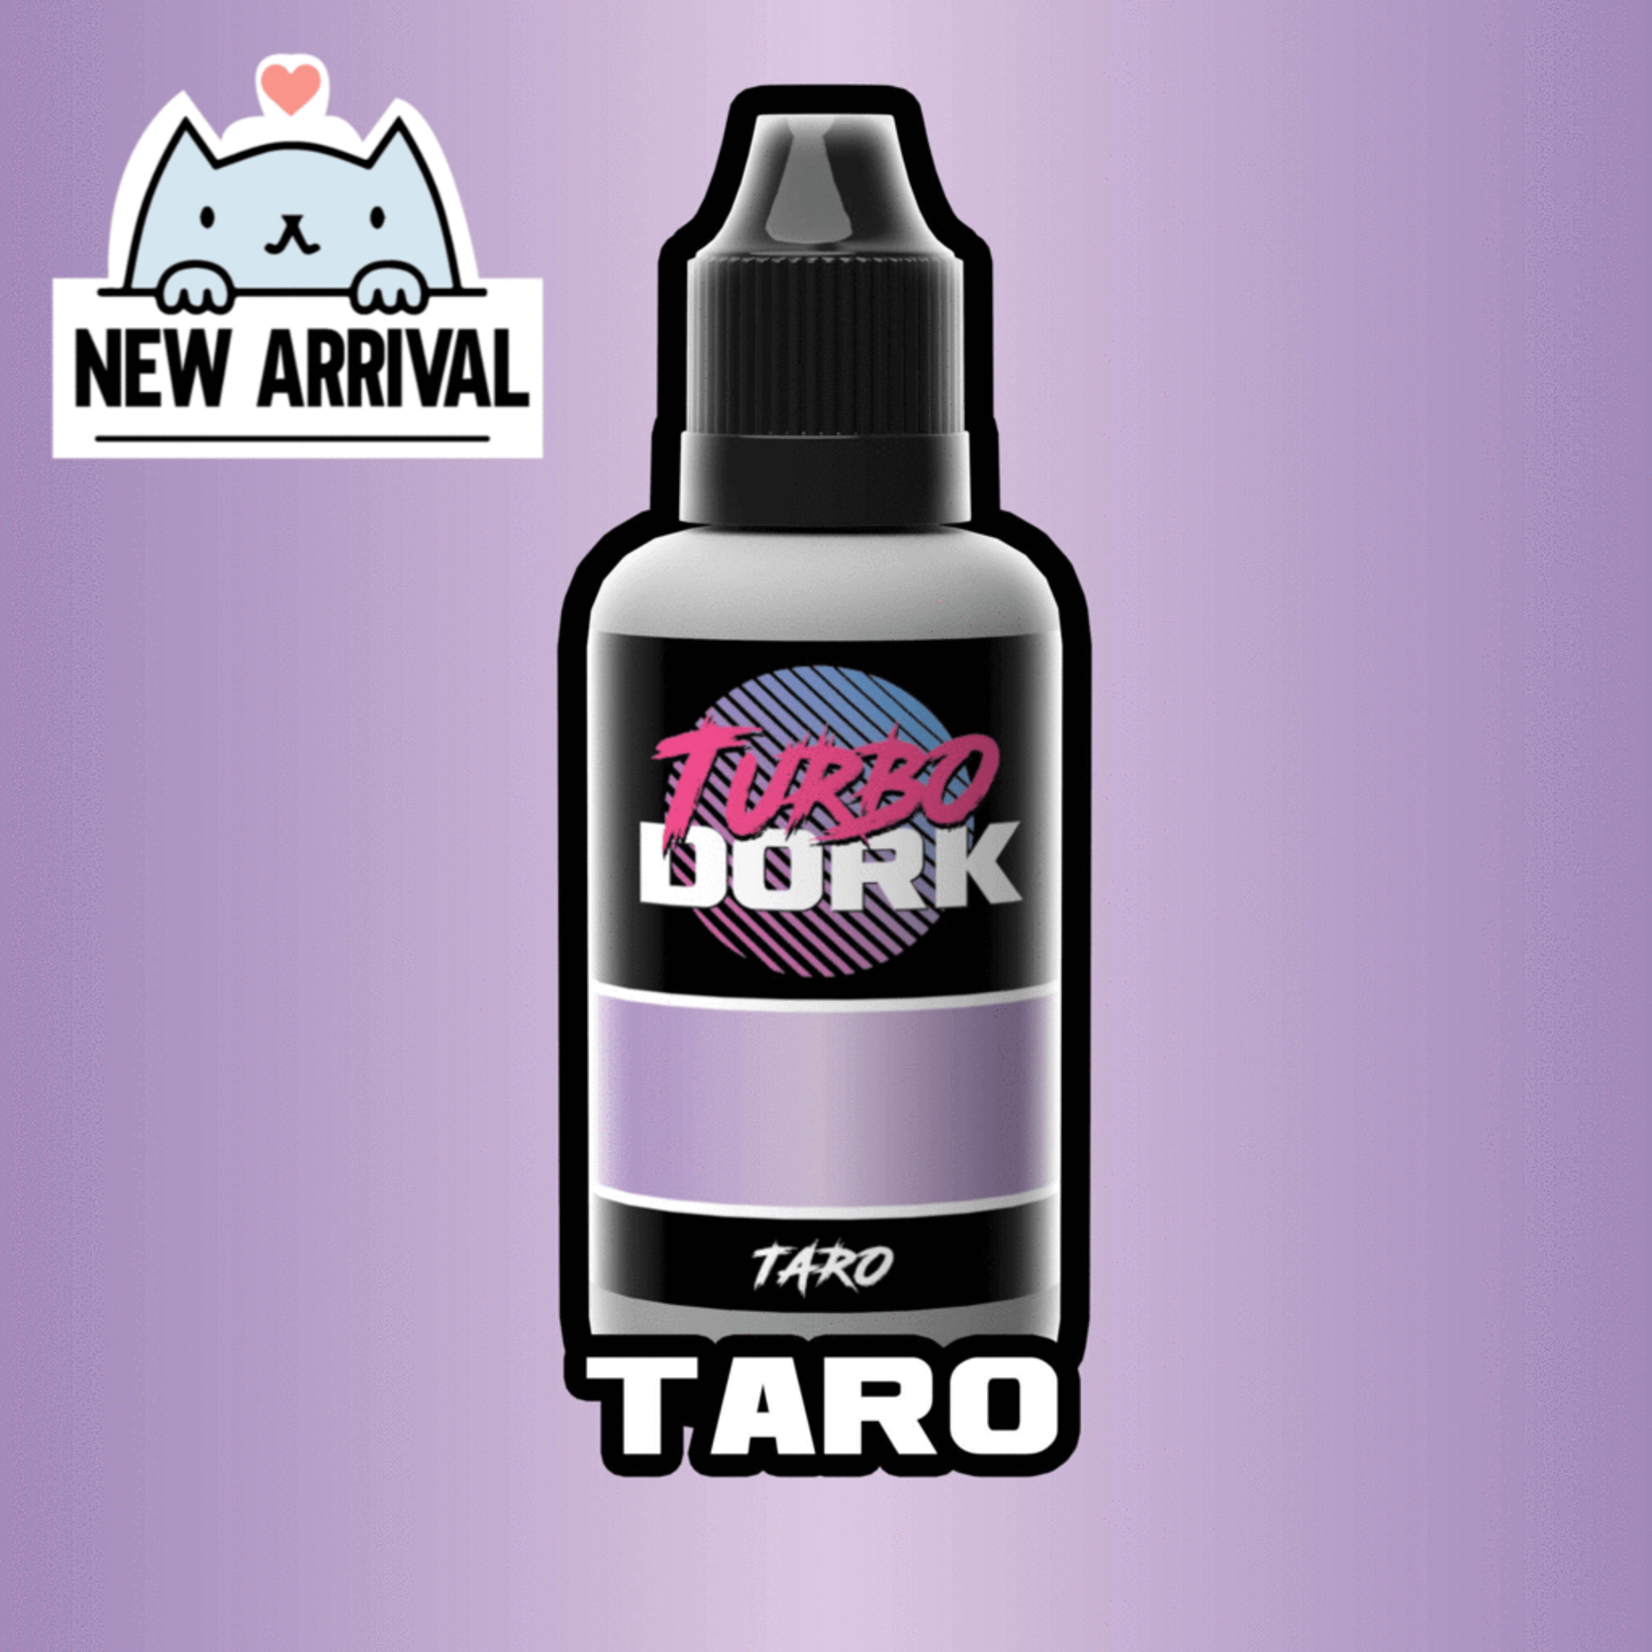 Turbo Dork Taro Metallic Acrylic Paint 20ml Bottle